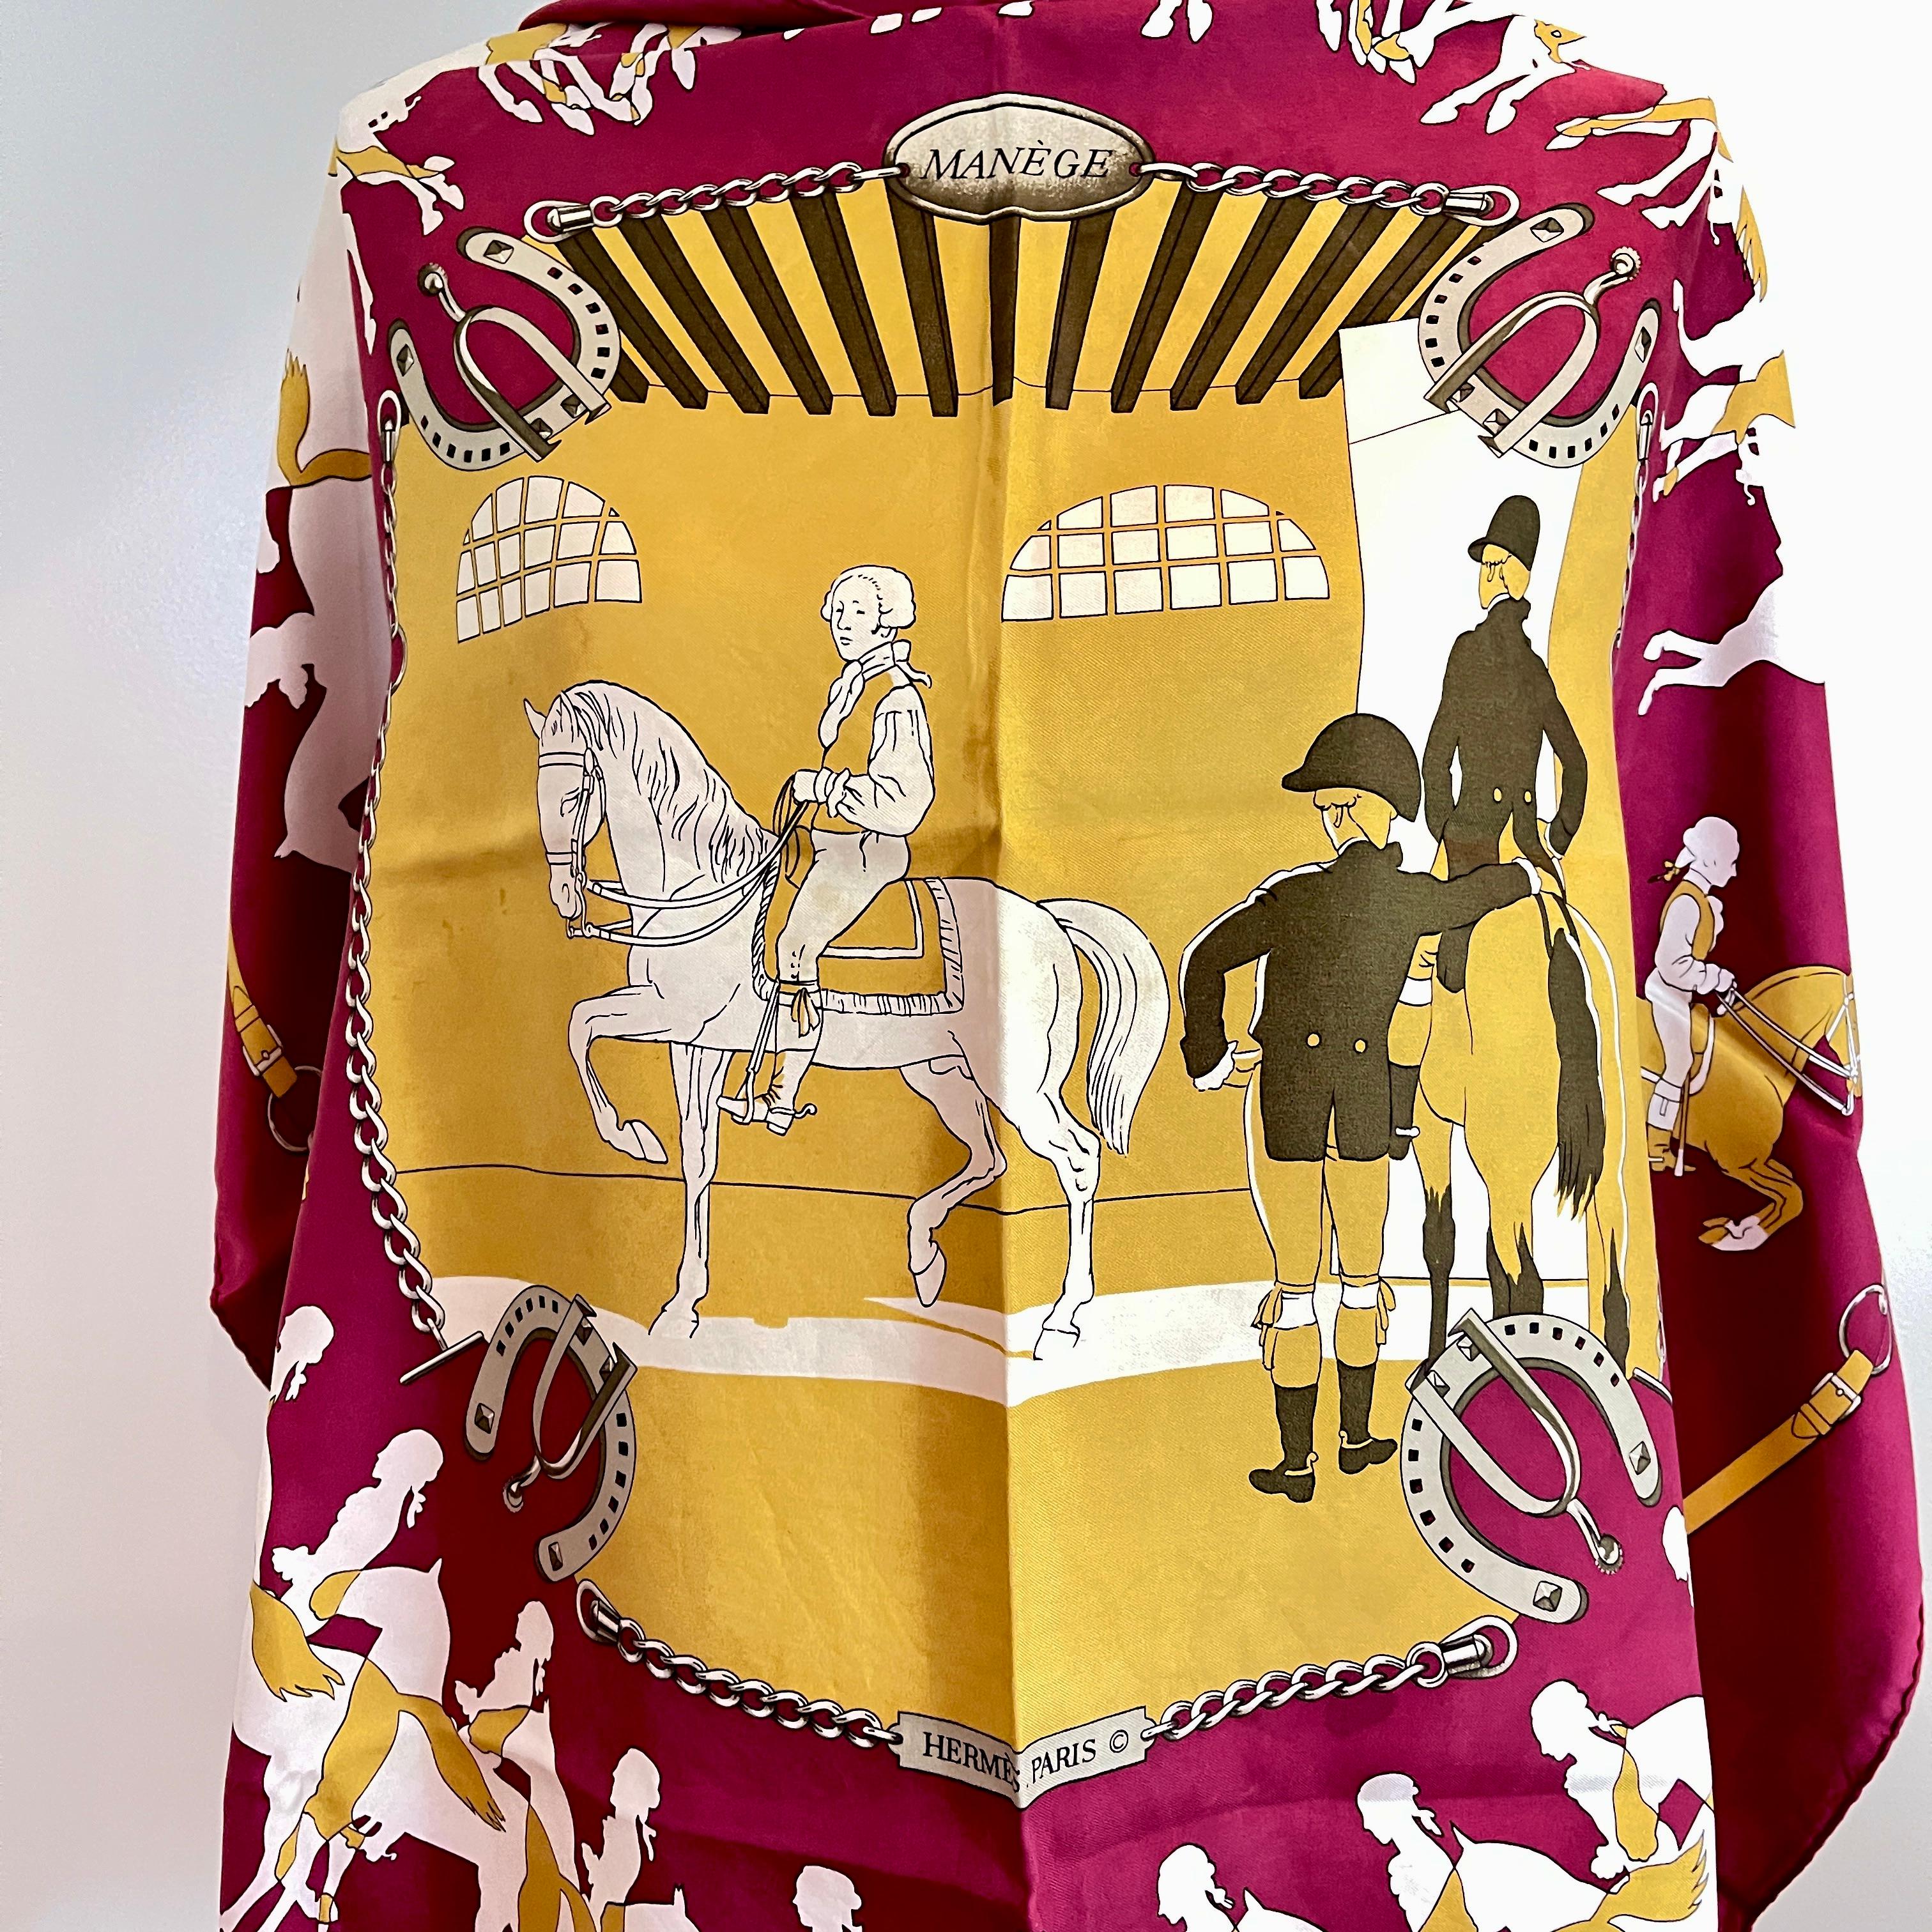 De la maison de couture française Hermès, un foulard en soie vintage de la ligne Manège, circa 1974.

Conçu par Philippe LeDoux pour Hermès en 1974, il s'agit d'un millésime précoce d'un numéro classique, portant la signature du copyright.

Des